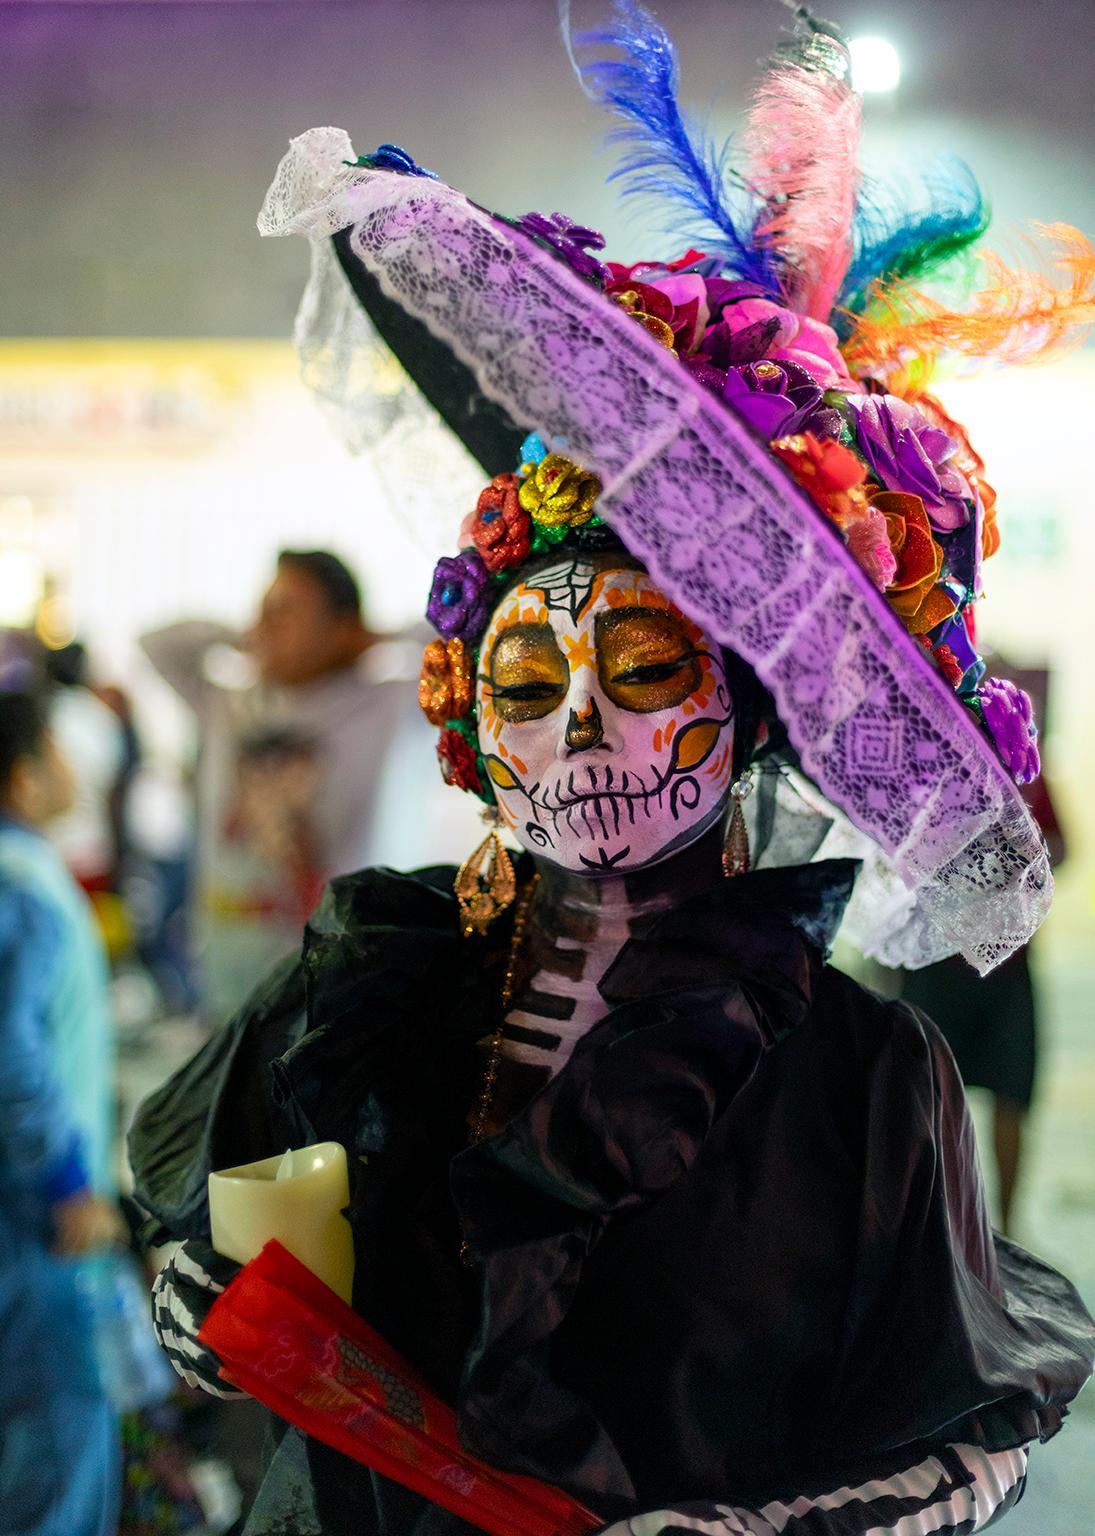  Cosmo Condina Color Photograph - “Death with attitude”, Day of the Dead, Dia de los Muertos, Isla Mujeres, Mexico